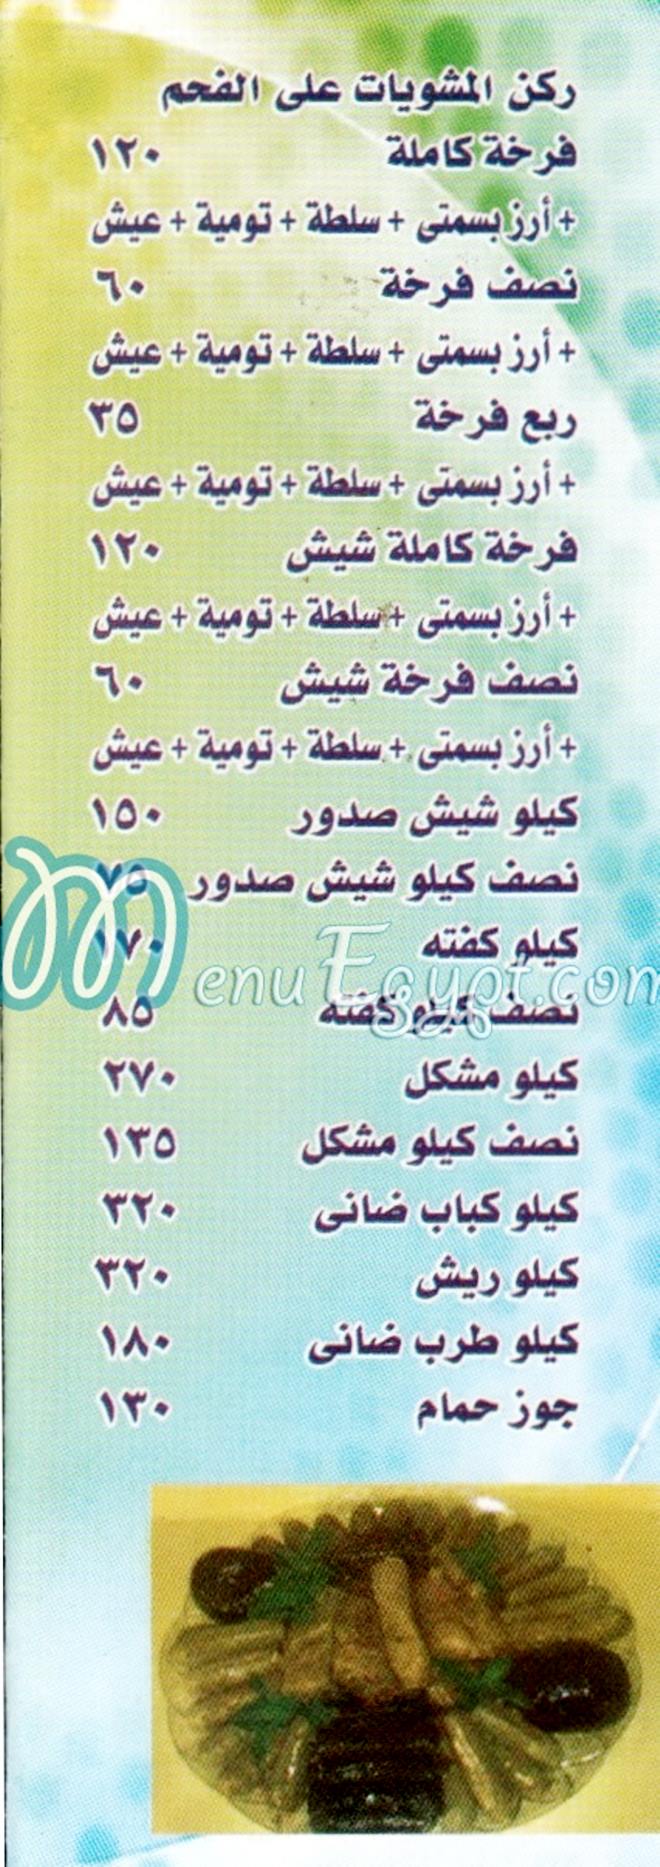 Elkma Elshamya online menu